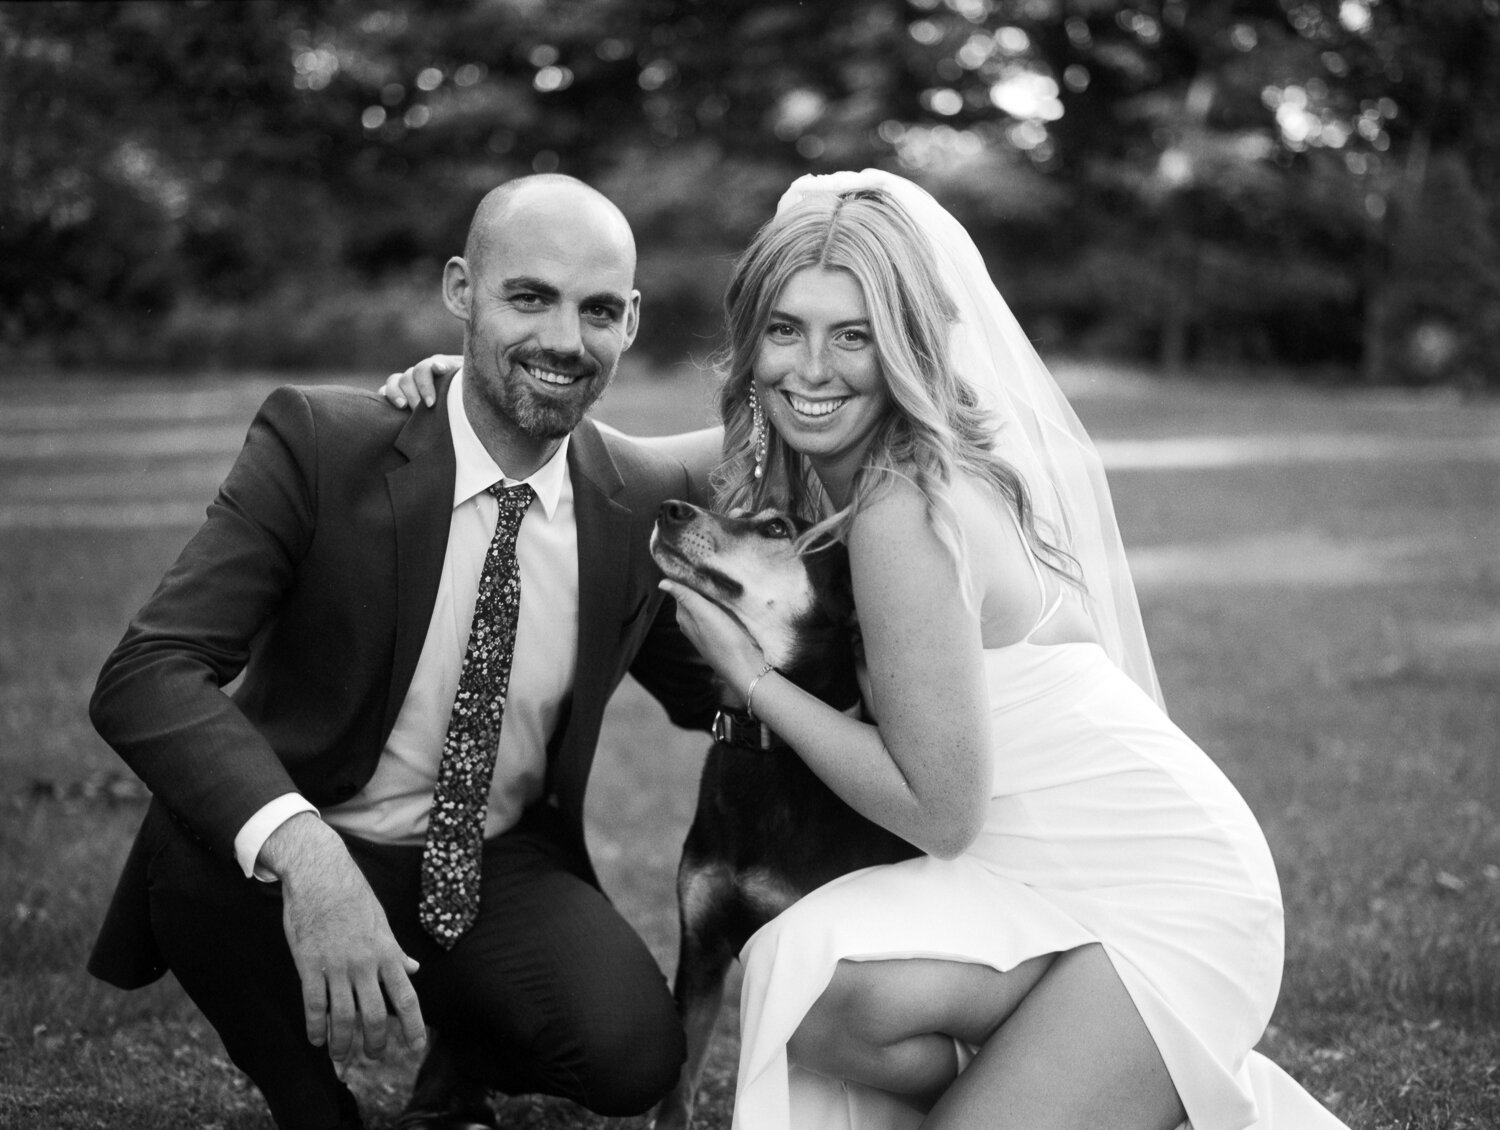 Analog-Film-Micro-Wedding-Photos-Inspiration-Backyard-Toronto-Ontario-124.JPG